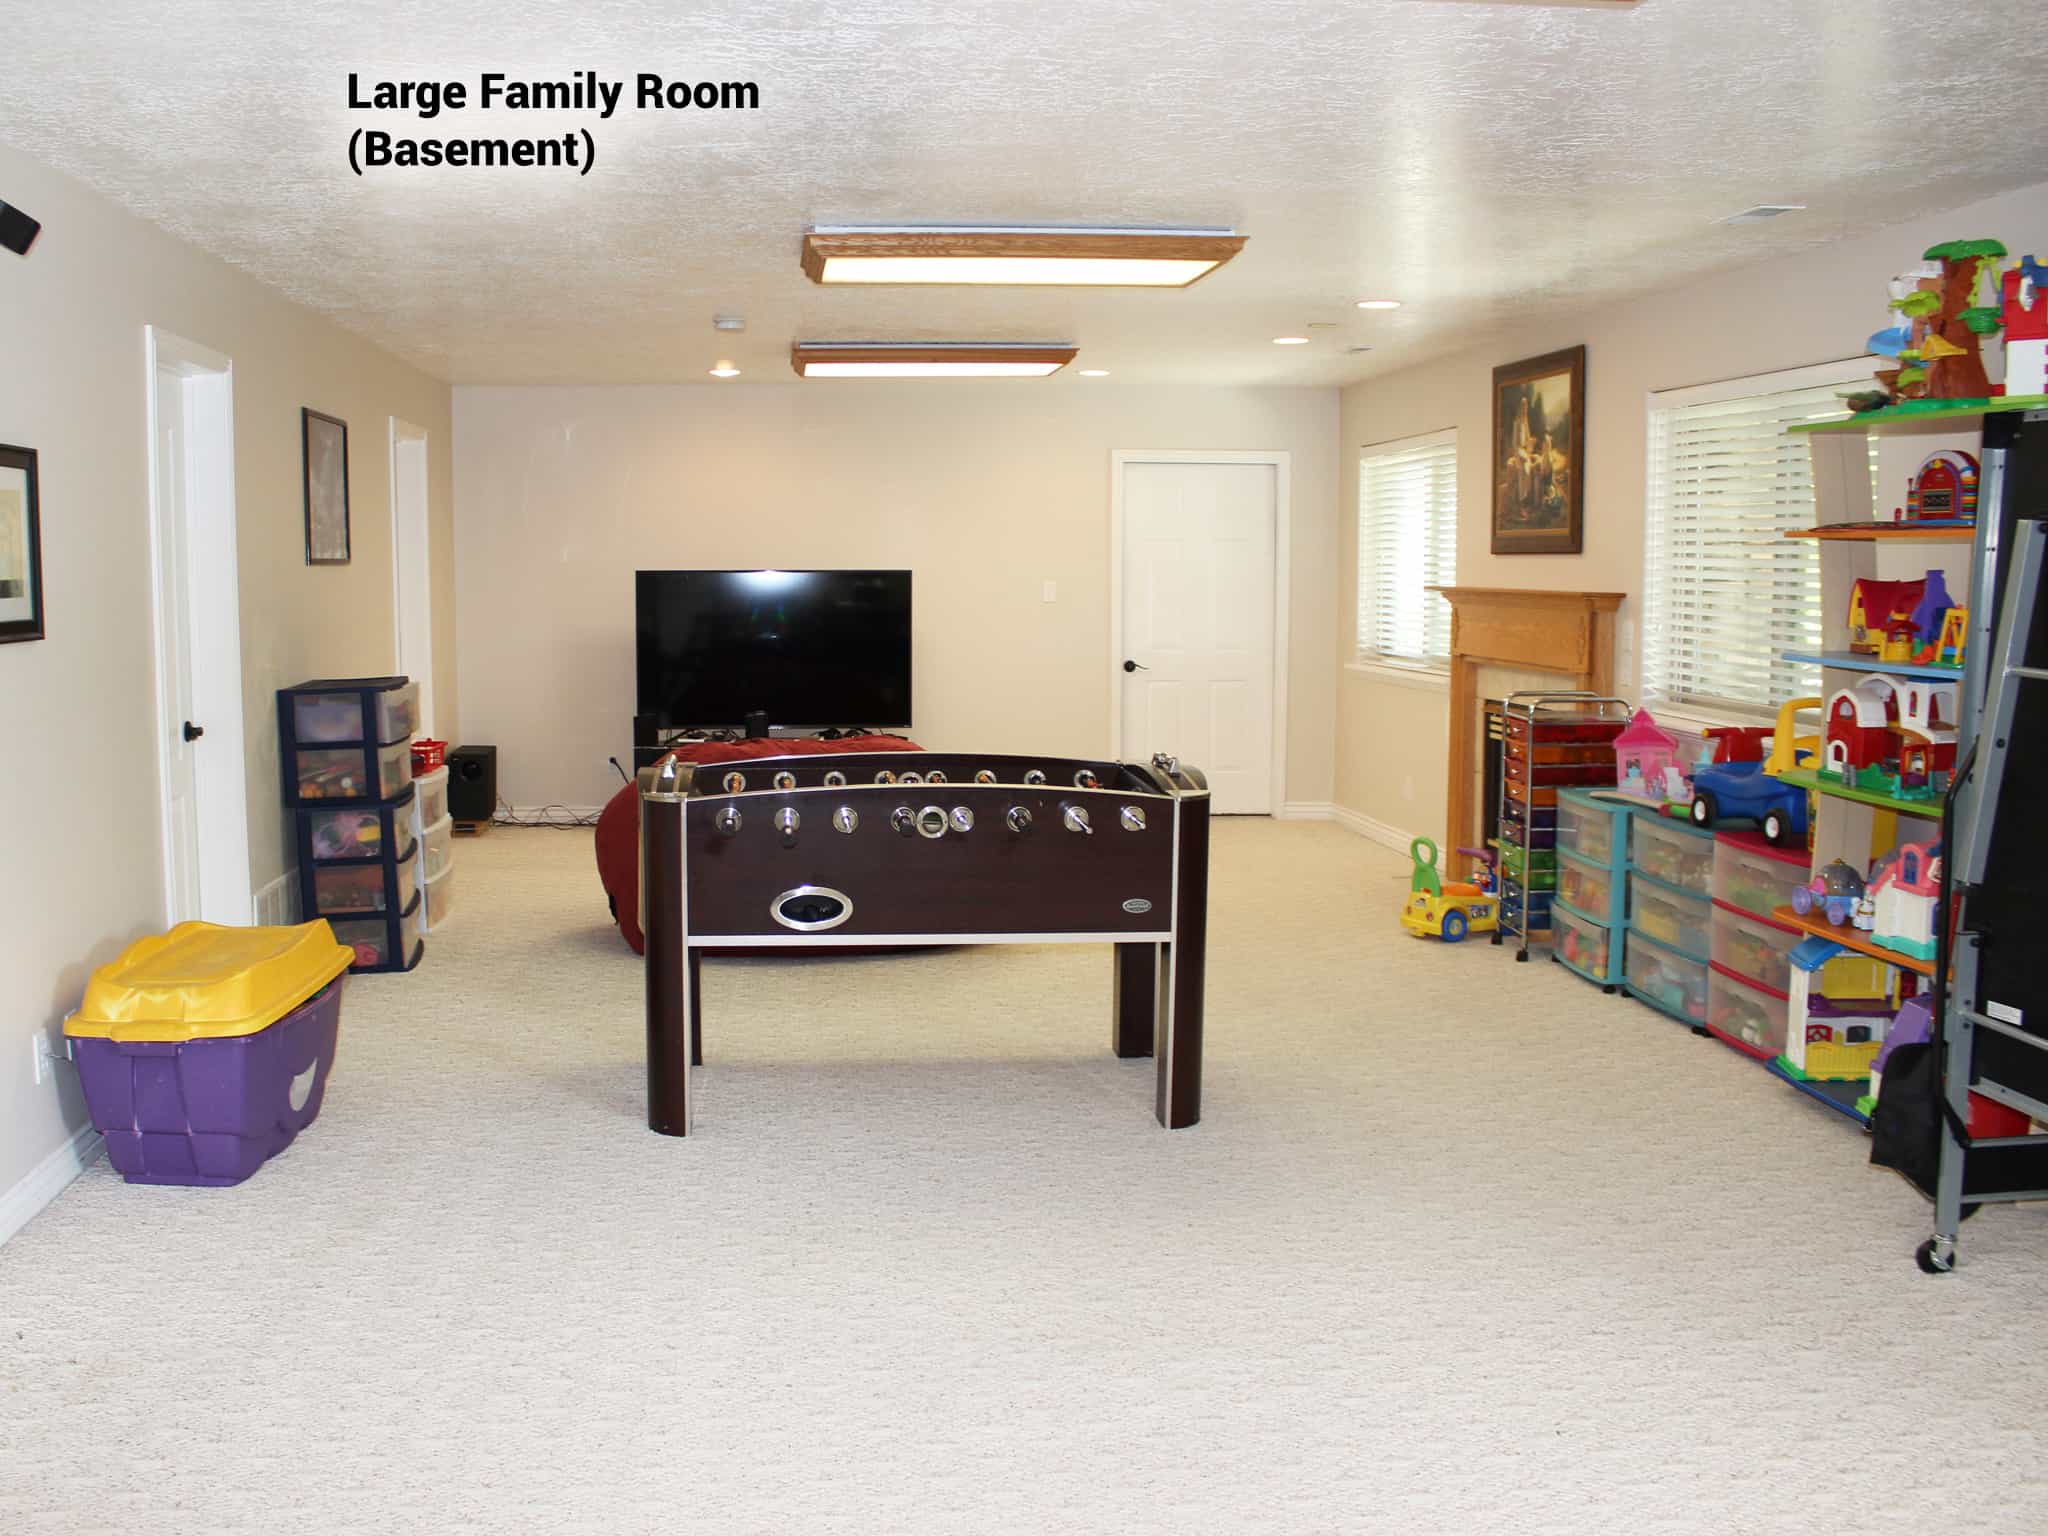 Basement Family Room